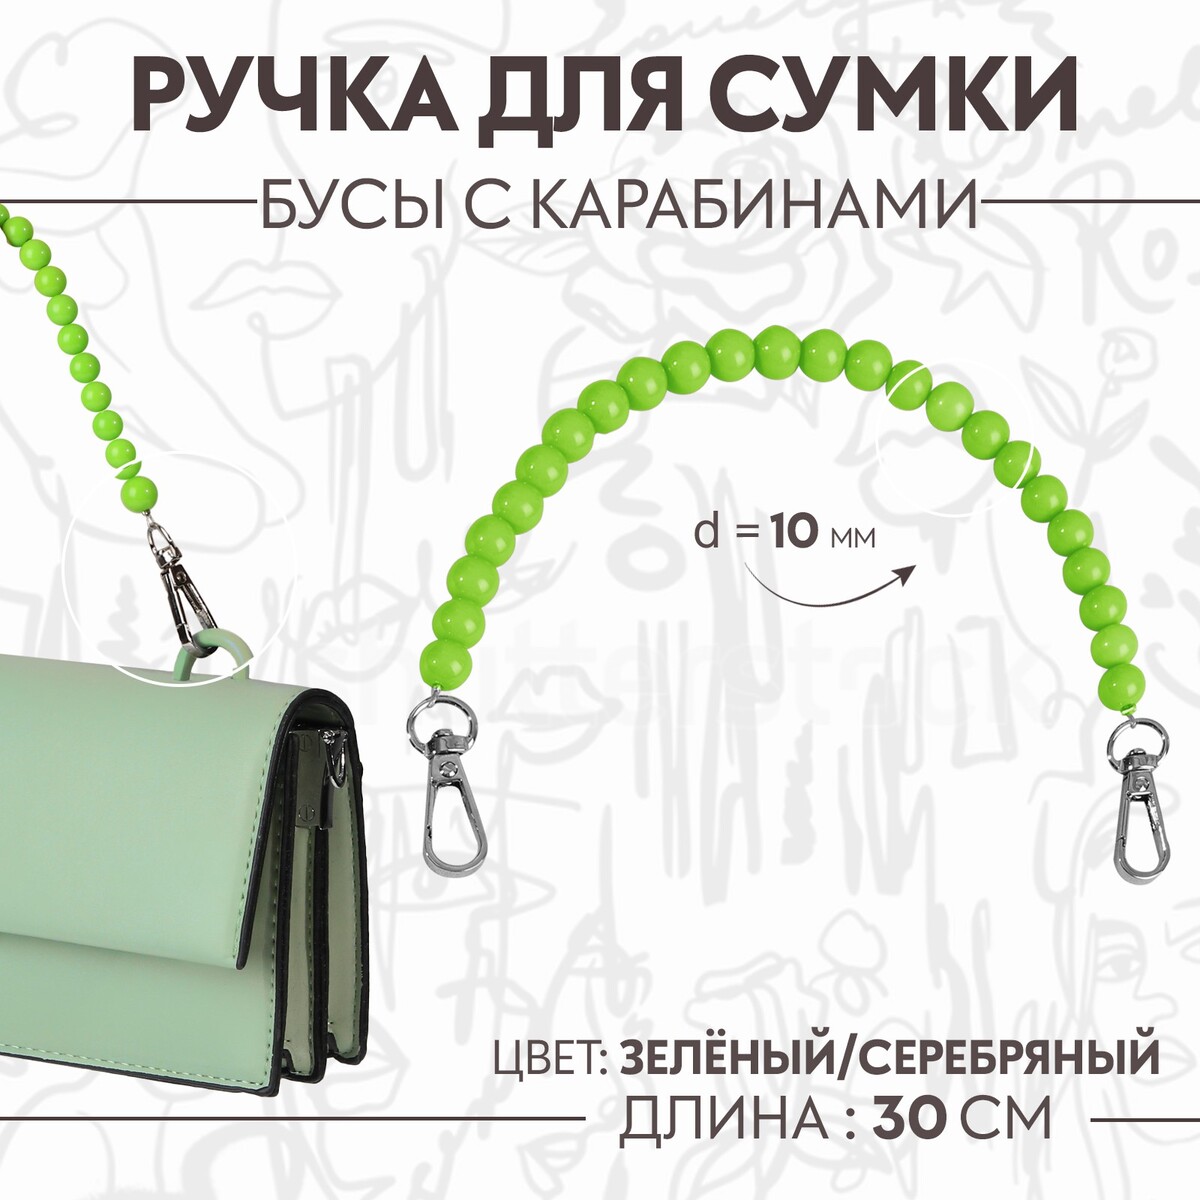 Ручка для сумки, бусы, d = 10 мм, 30 см, цвет зеленый